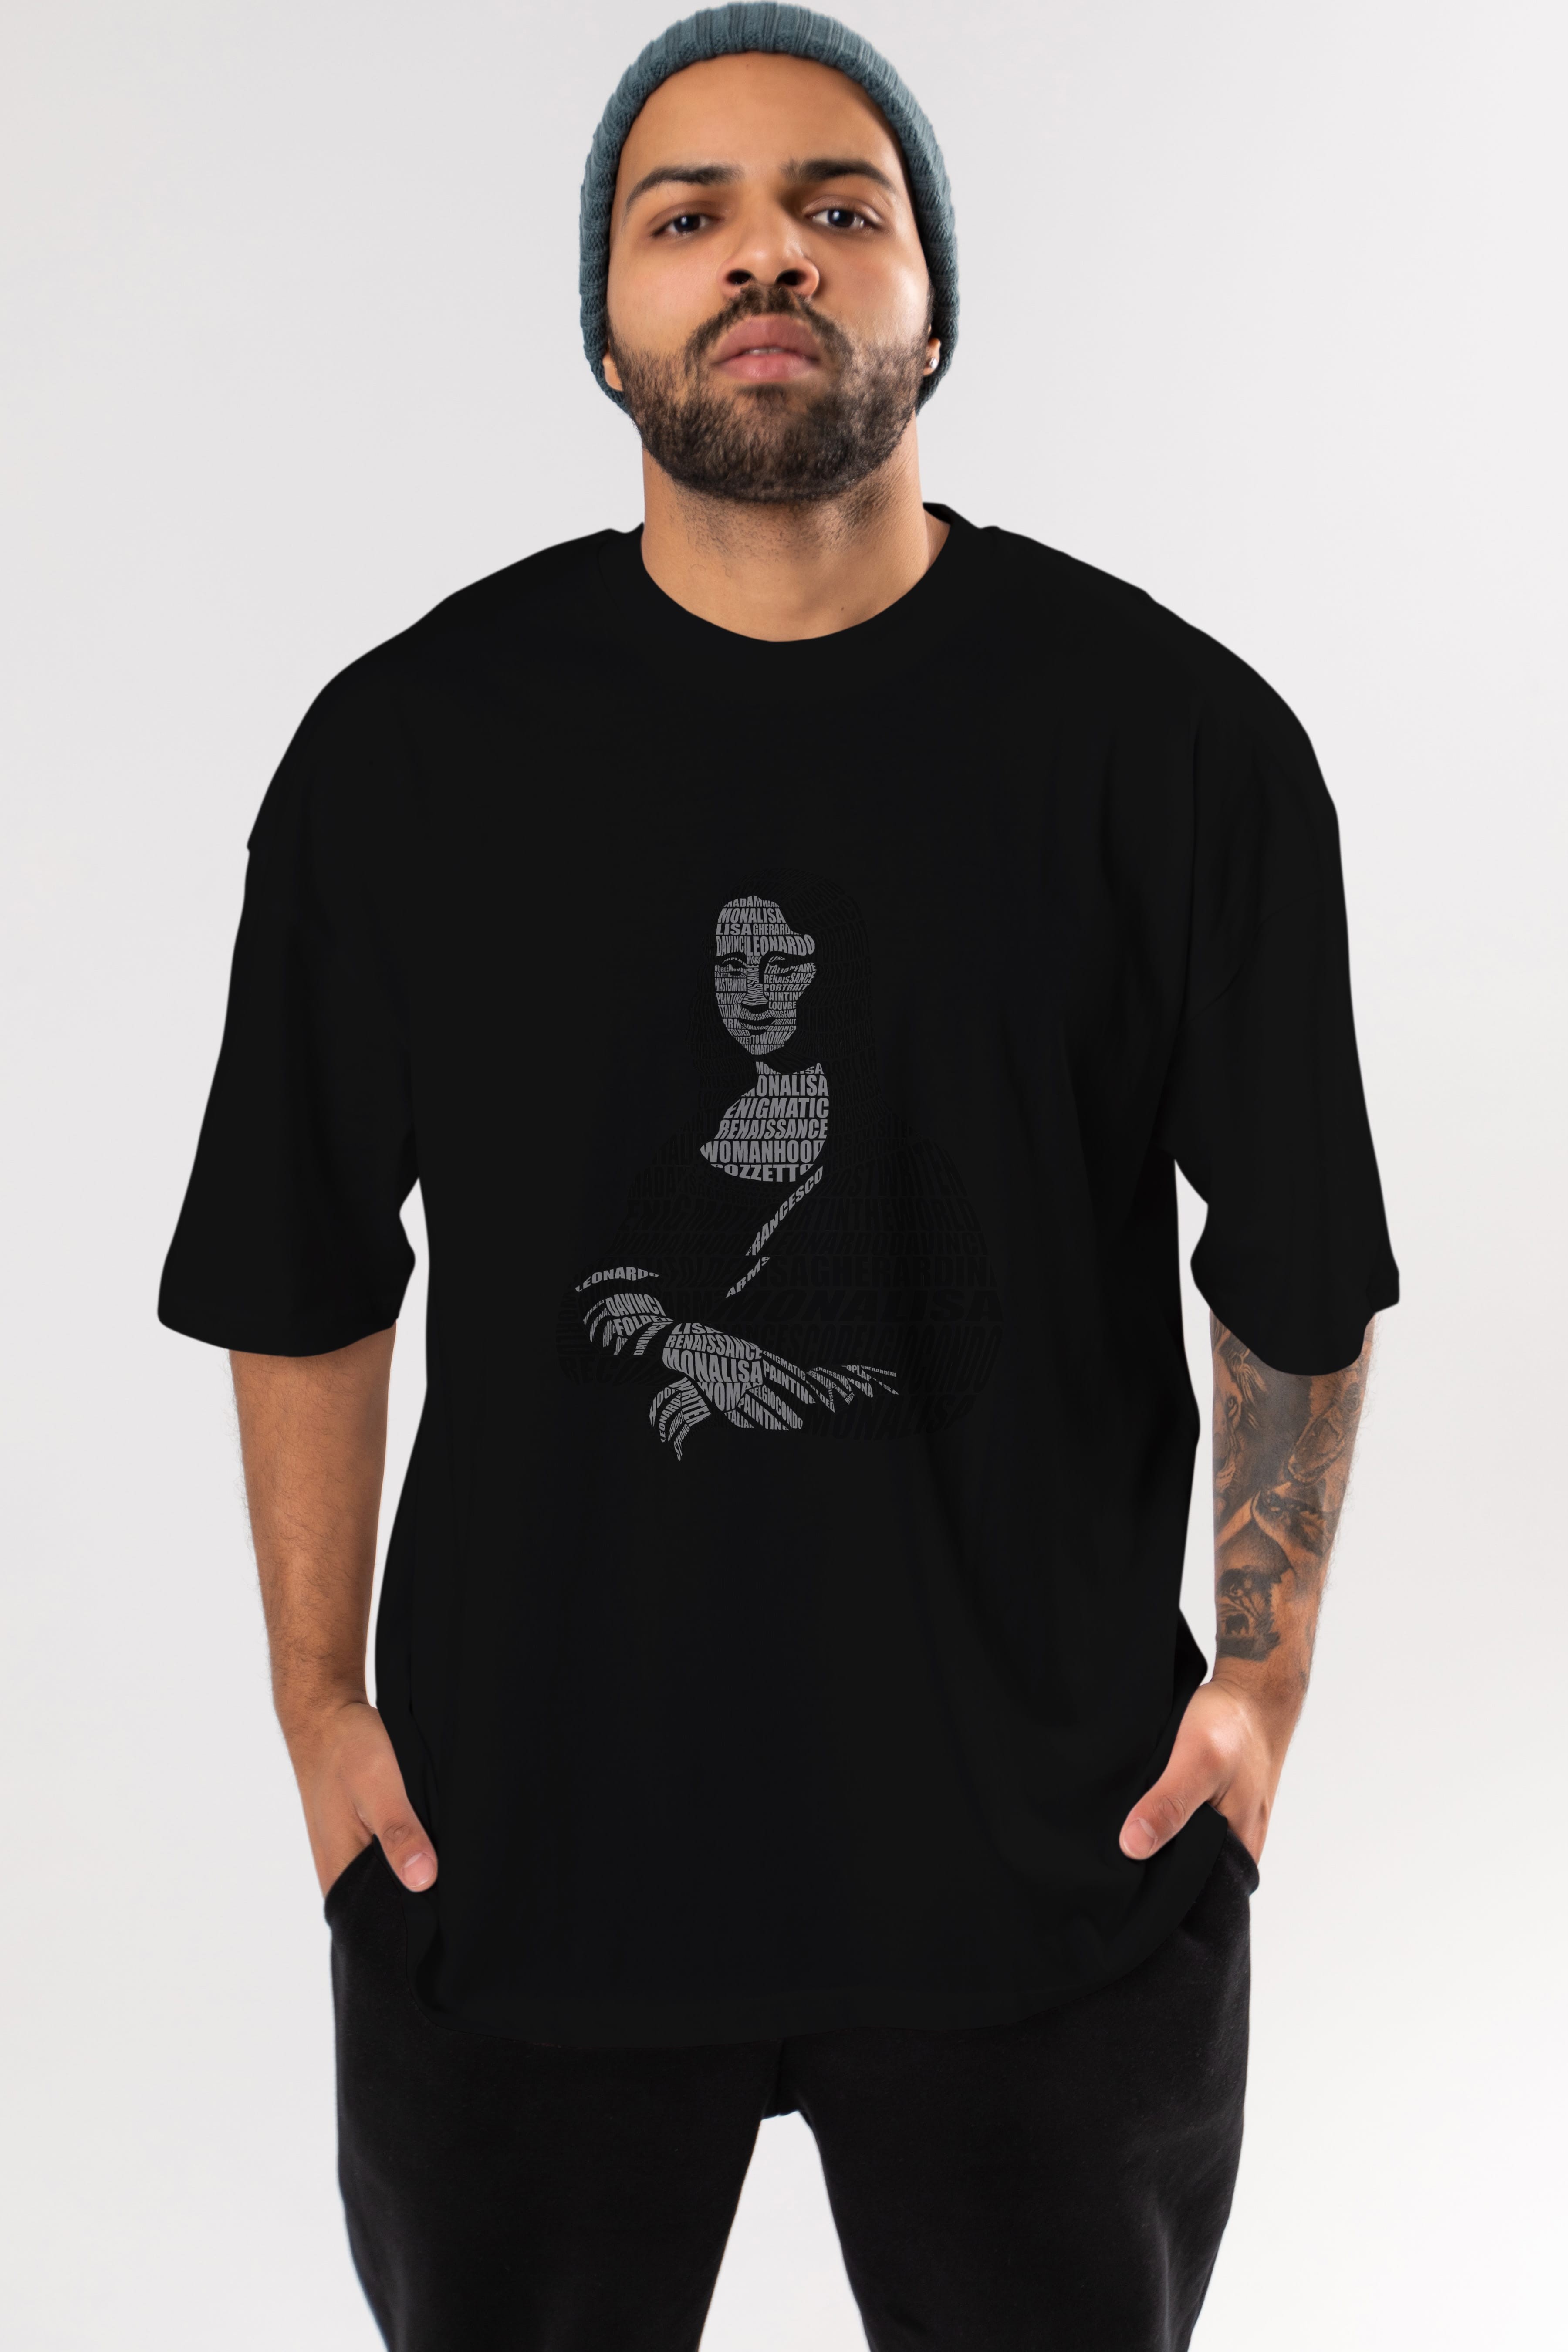 Mona Lisa Calligram Ön Baskılı Oversize t-shirt %100 pamuk Erkek Kadın Unisex